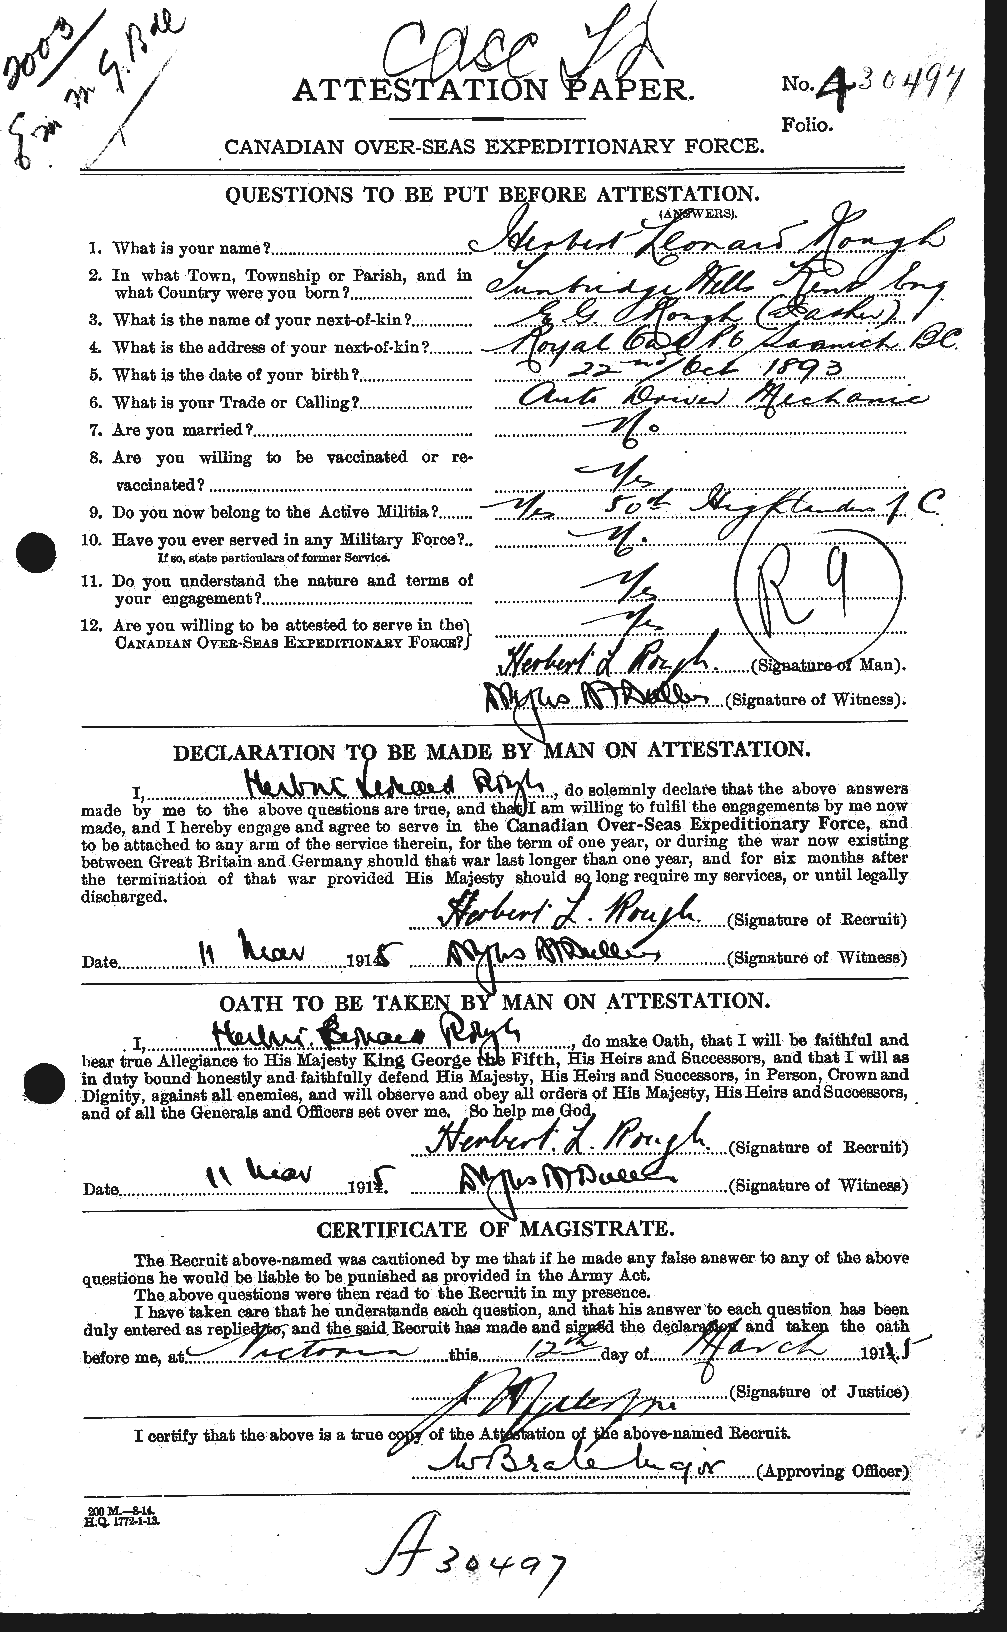 Dossiers du Personnel de la Première Guerre mondiale - CEC 614529a